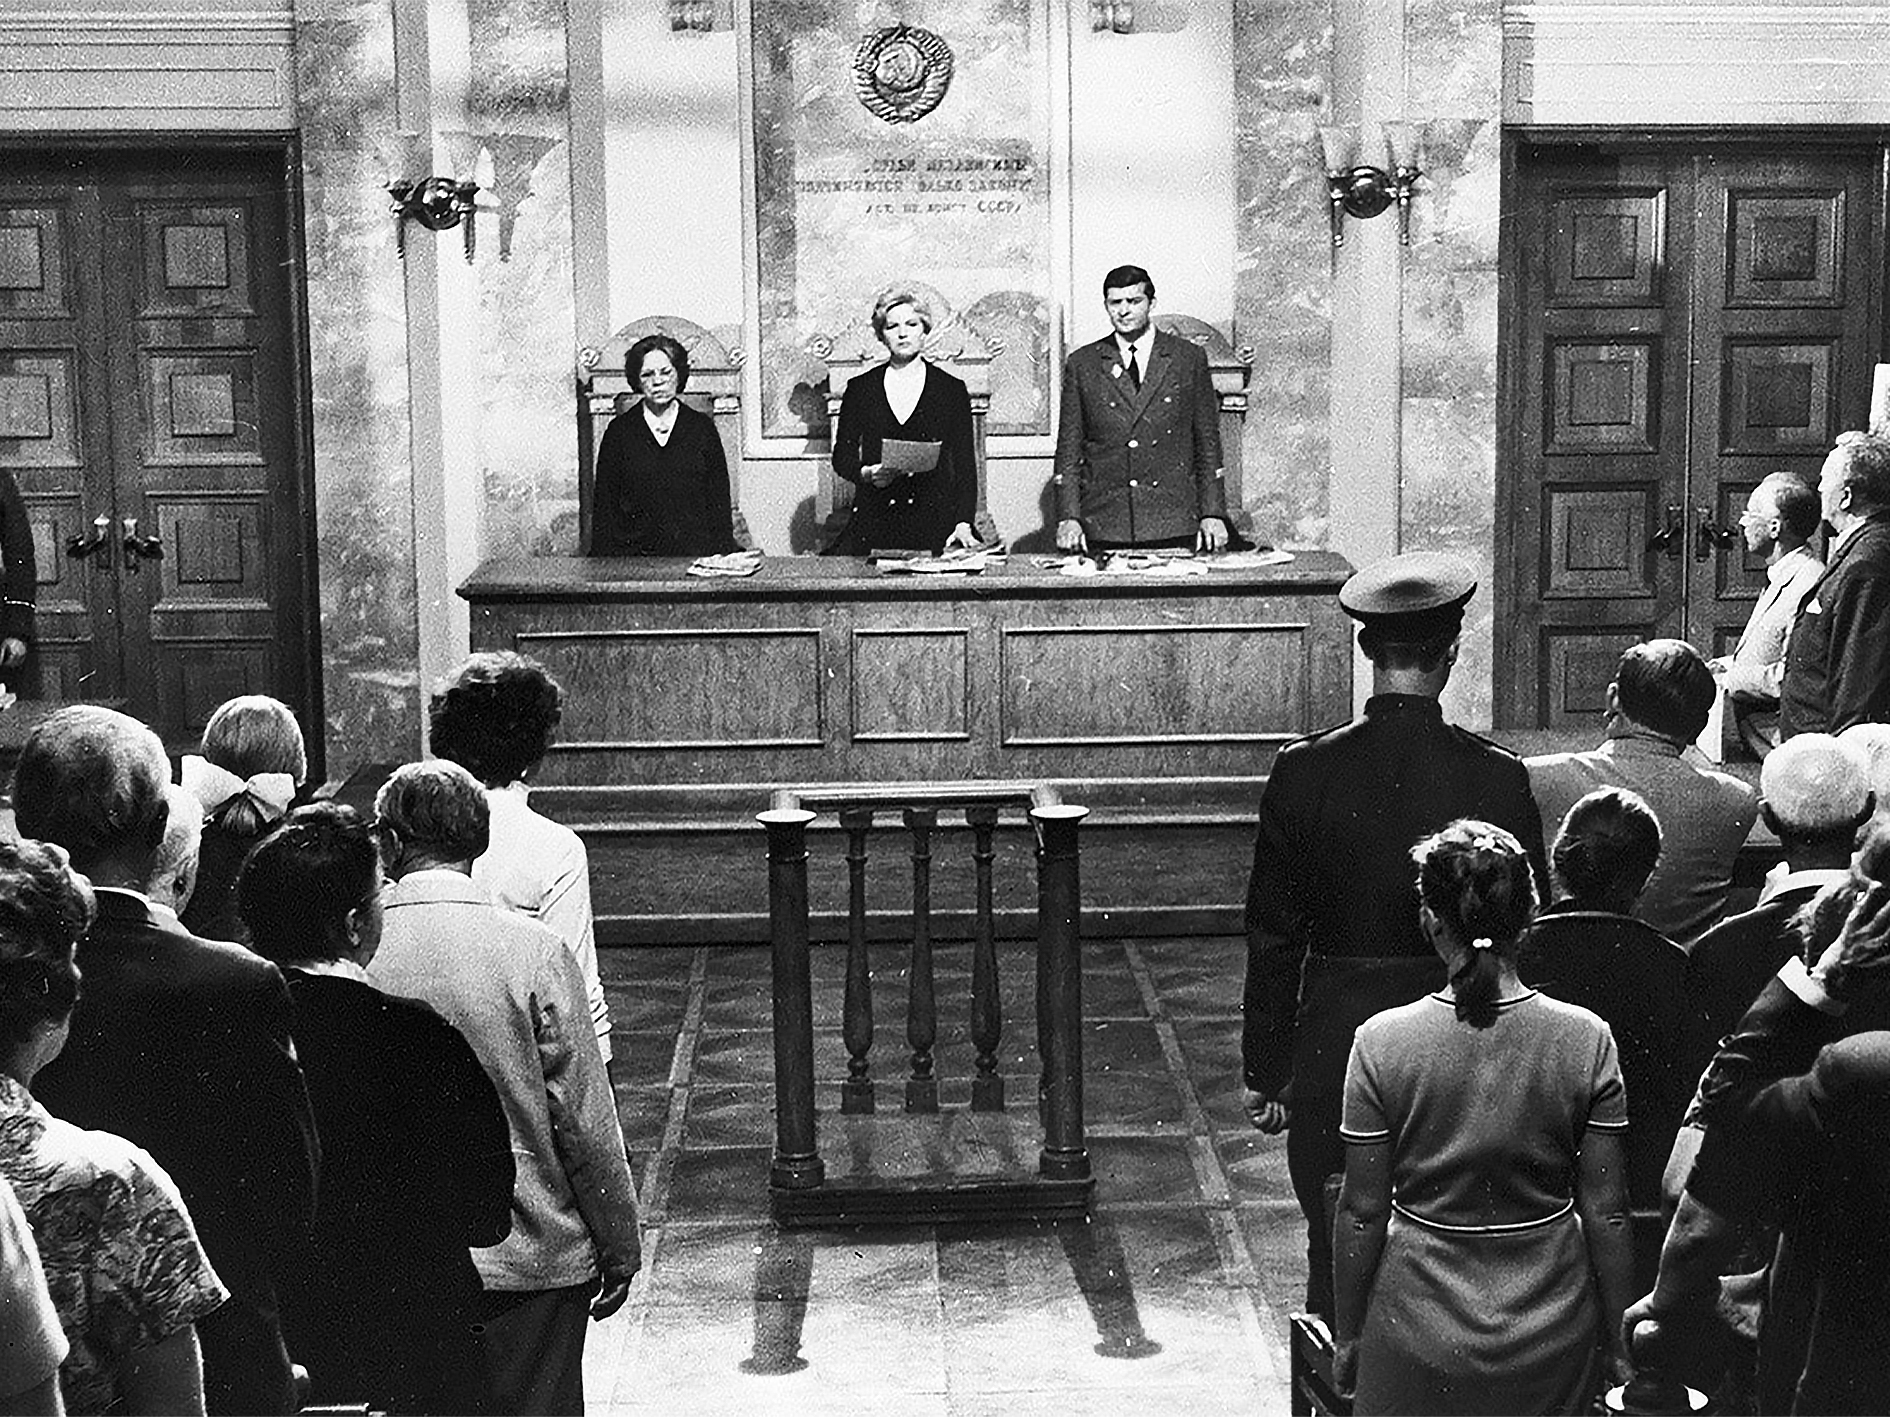 12 октября 20 года. Суд присяжных в СССР. Суд присяжных 19 век. Присяжные заседатели, 20 век. Суд присяжных 20 век.